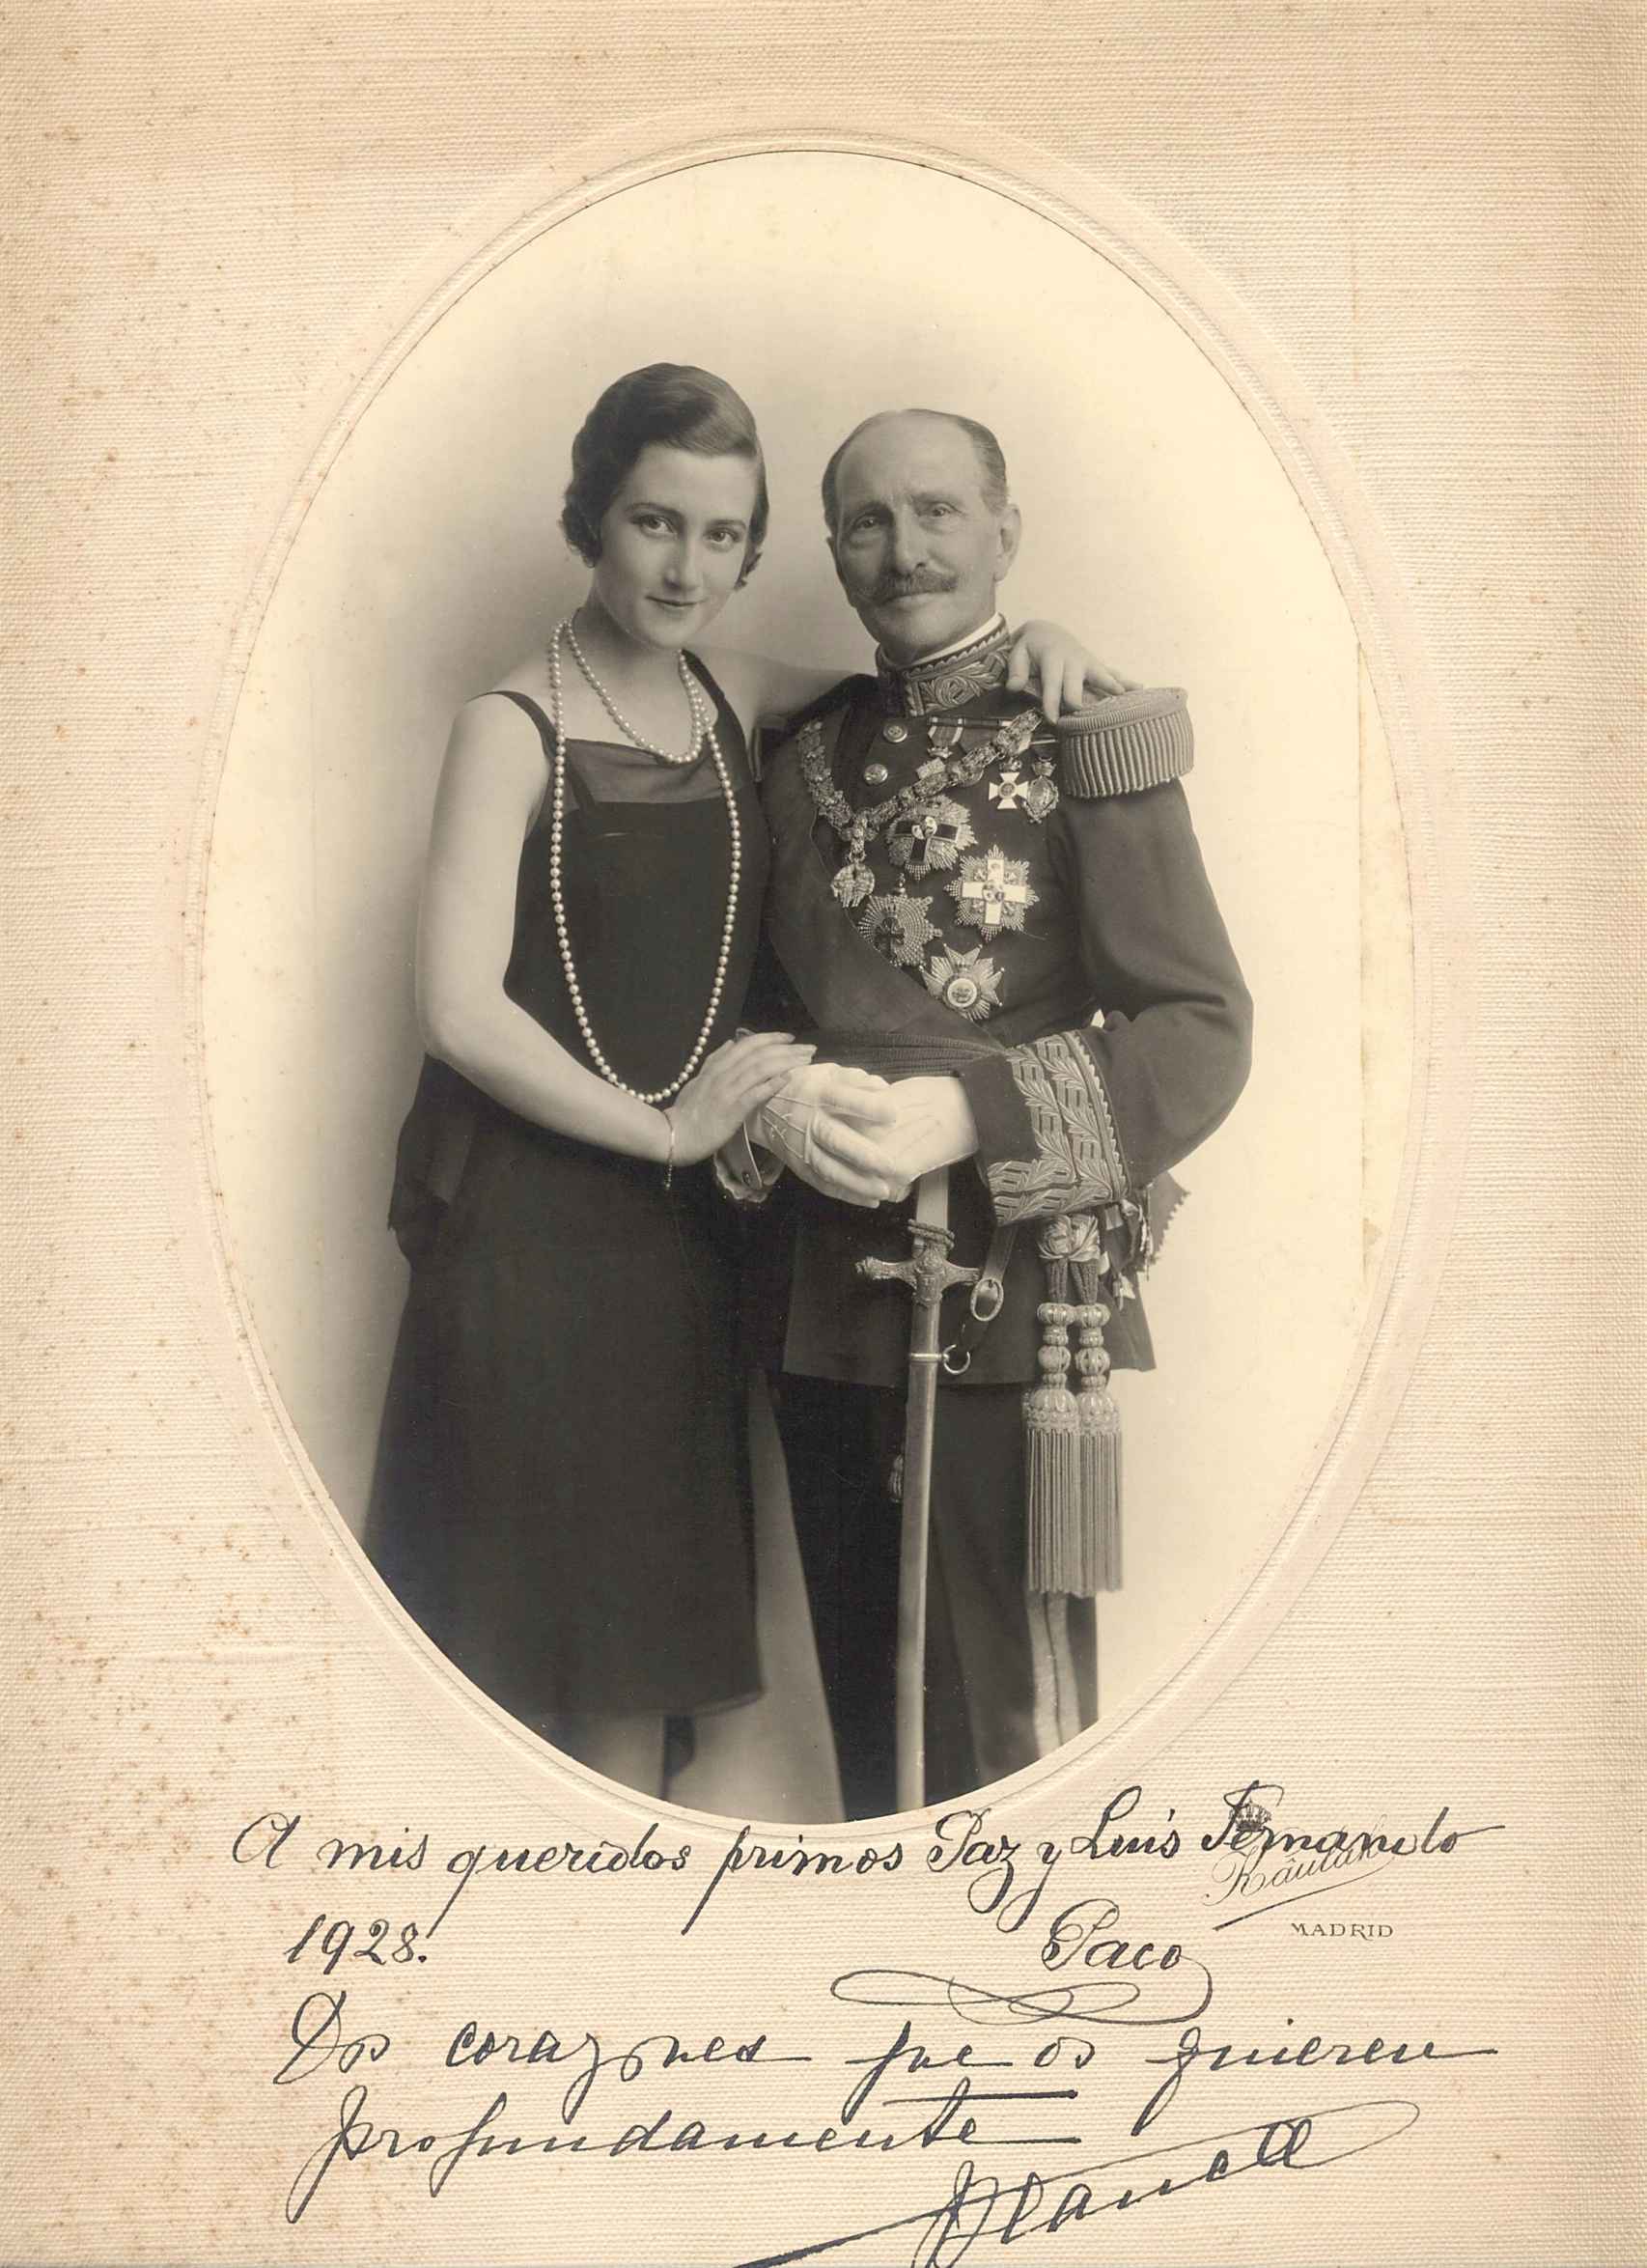 Francisco de Borbón y Castellvi, el general Borbón, con su hija Blanca futura condesa de Romanones. Está dedicada a la infanta Paz, hermana de Alfonso XII.